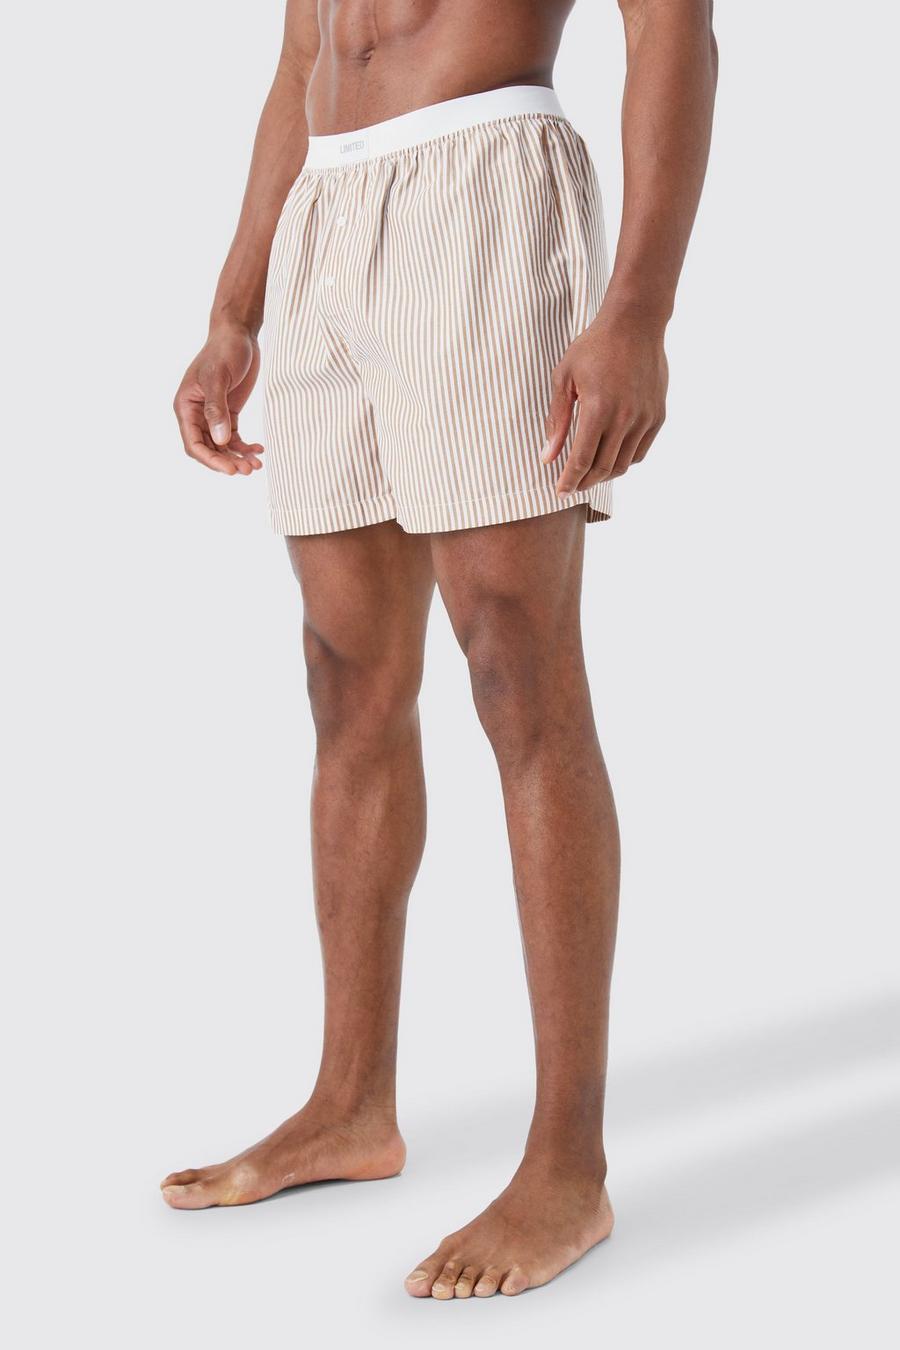 Pantalones cortos bóxer Limited de tela con rayas, Stone